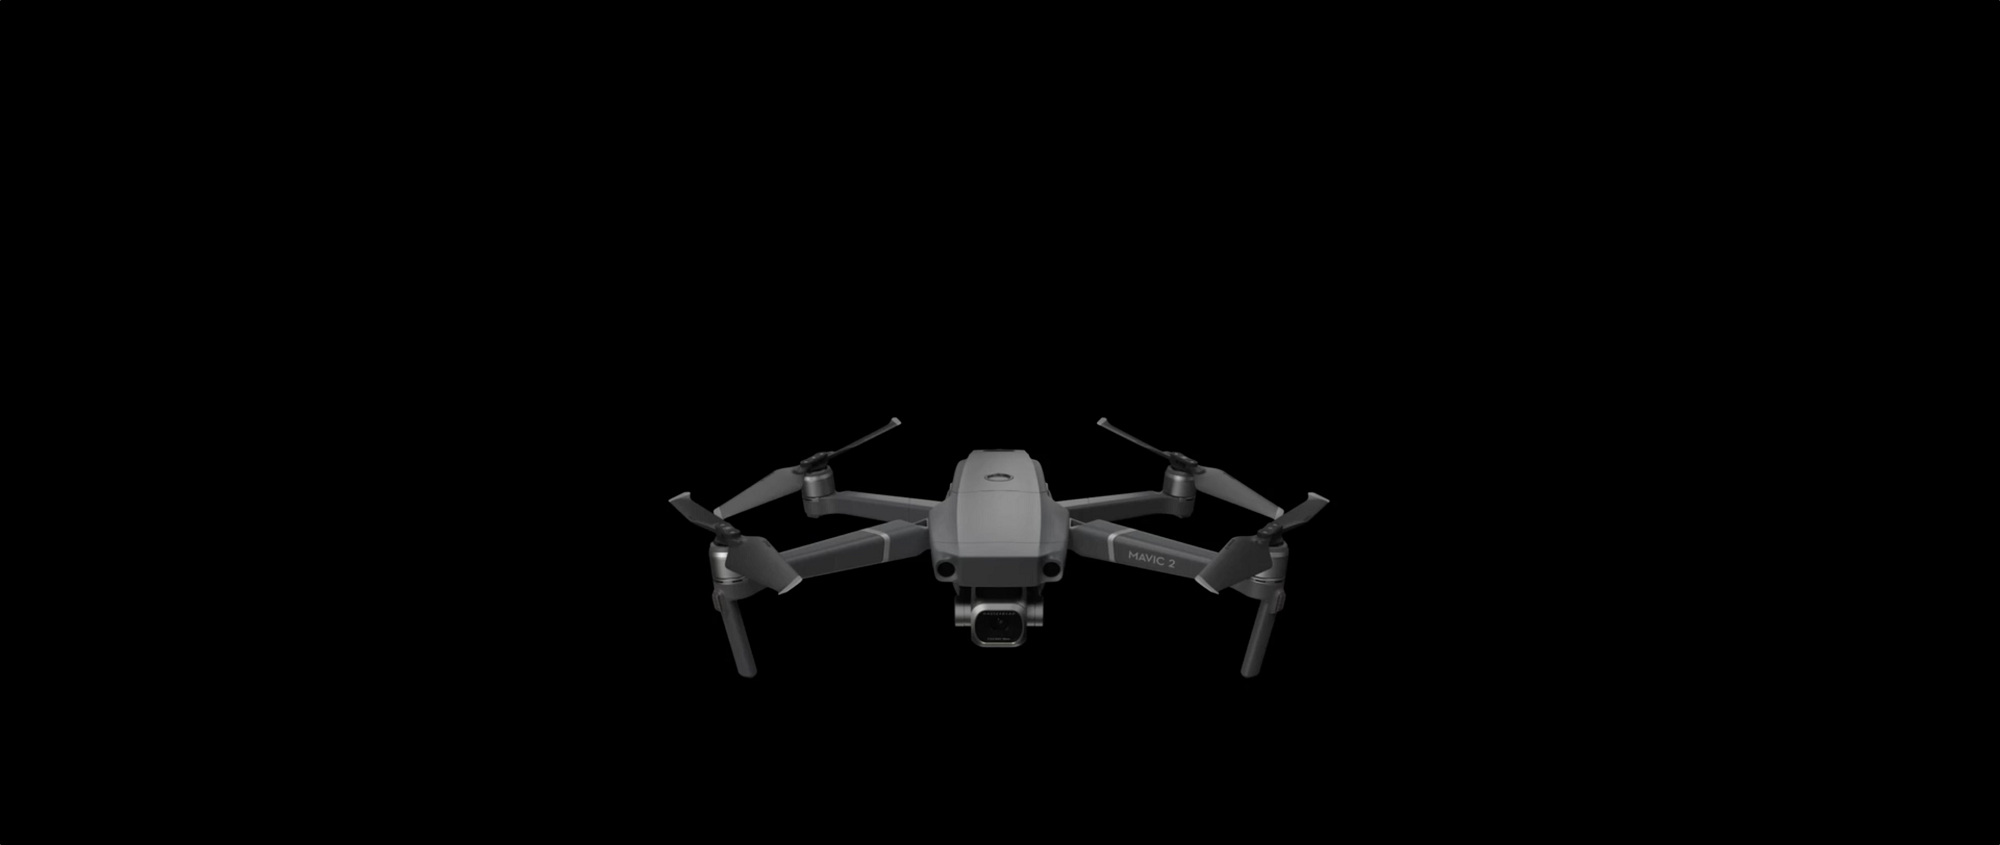 Bilder des DJI Mavic 3 Quadcopters sind veröffentlicht worden